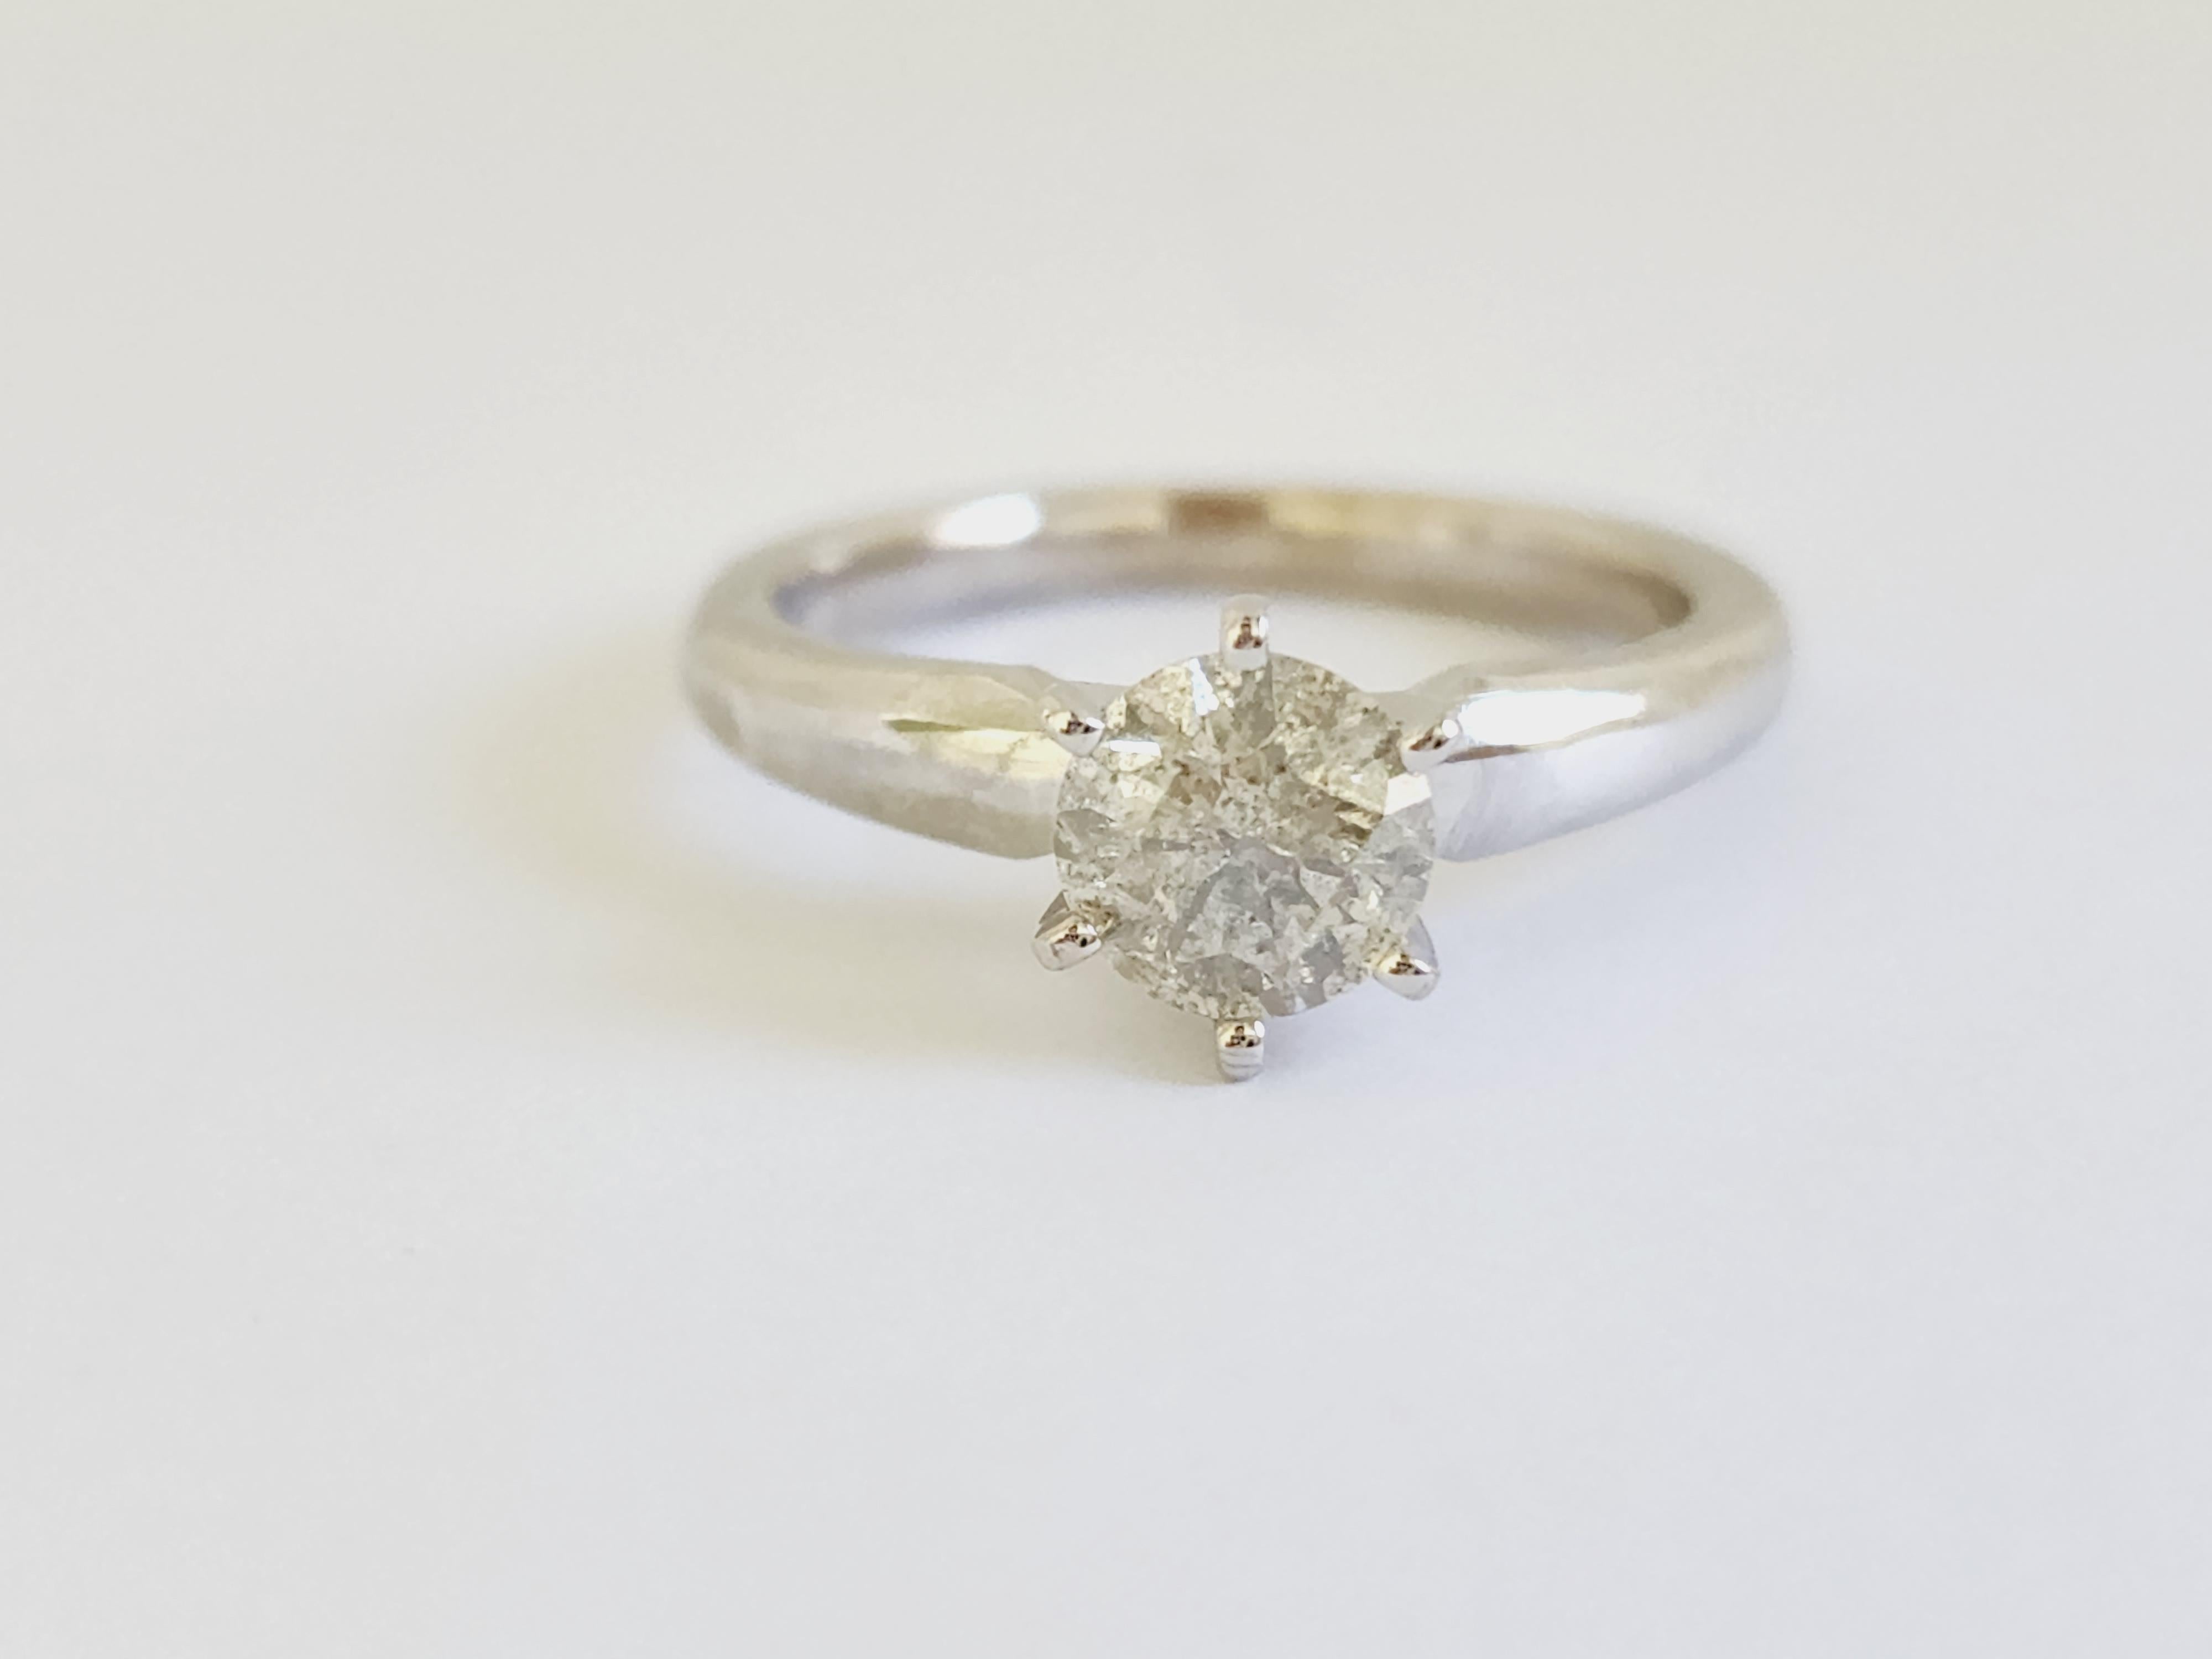 Natural 0.86 Carat Round Diamond Ring 14 Karat White Gold. Set on 6-prong Solitaire 14K white gold ring.
Ring size: 6.5